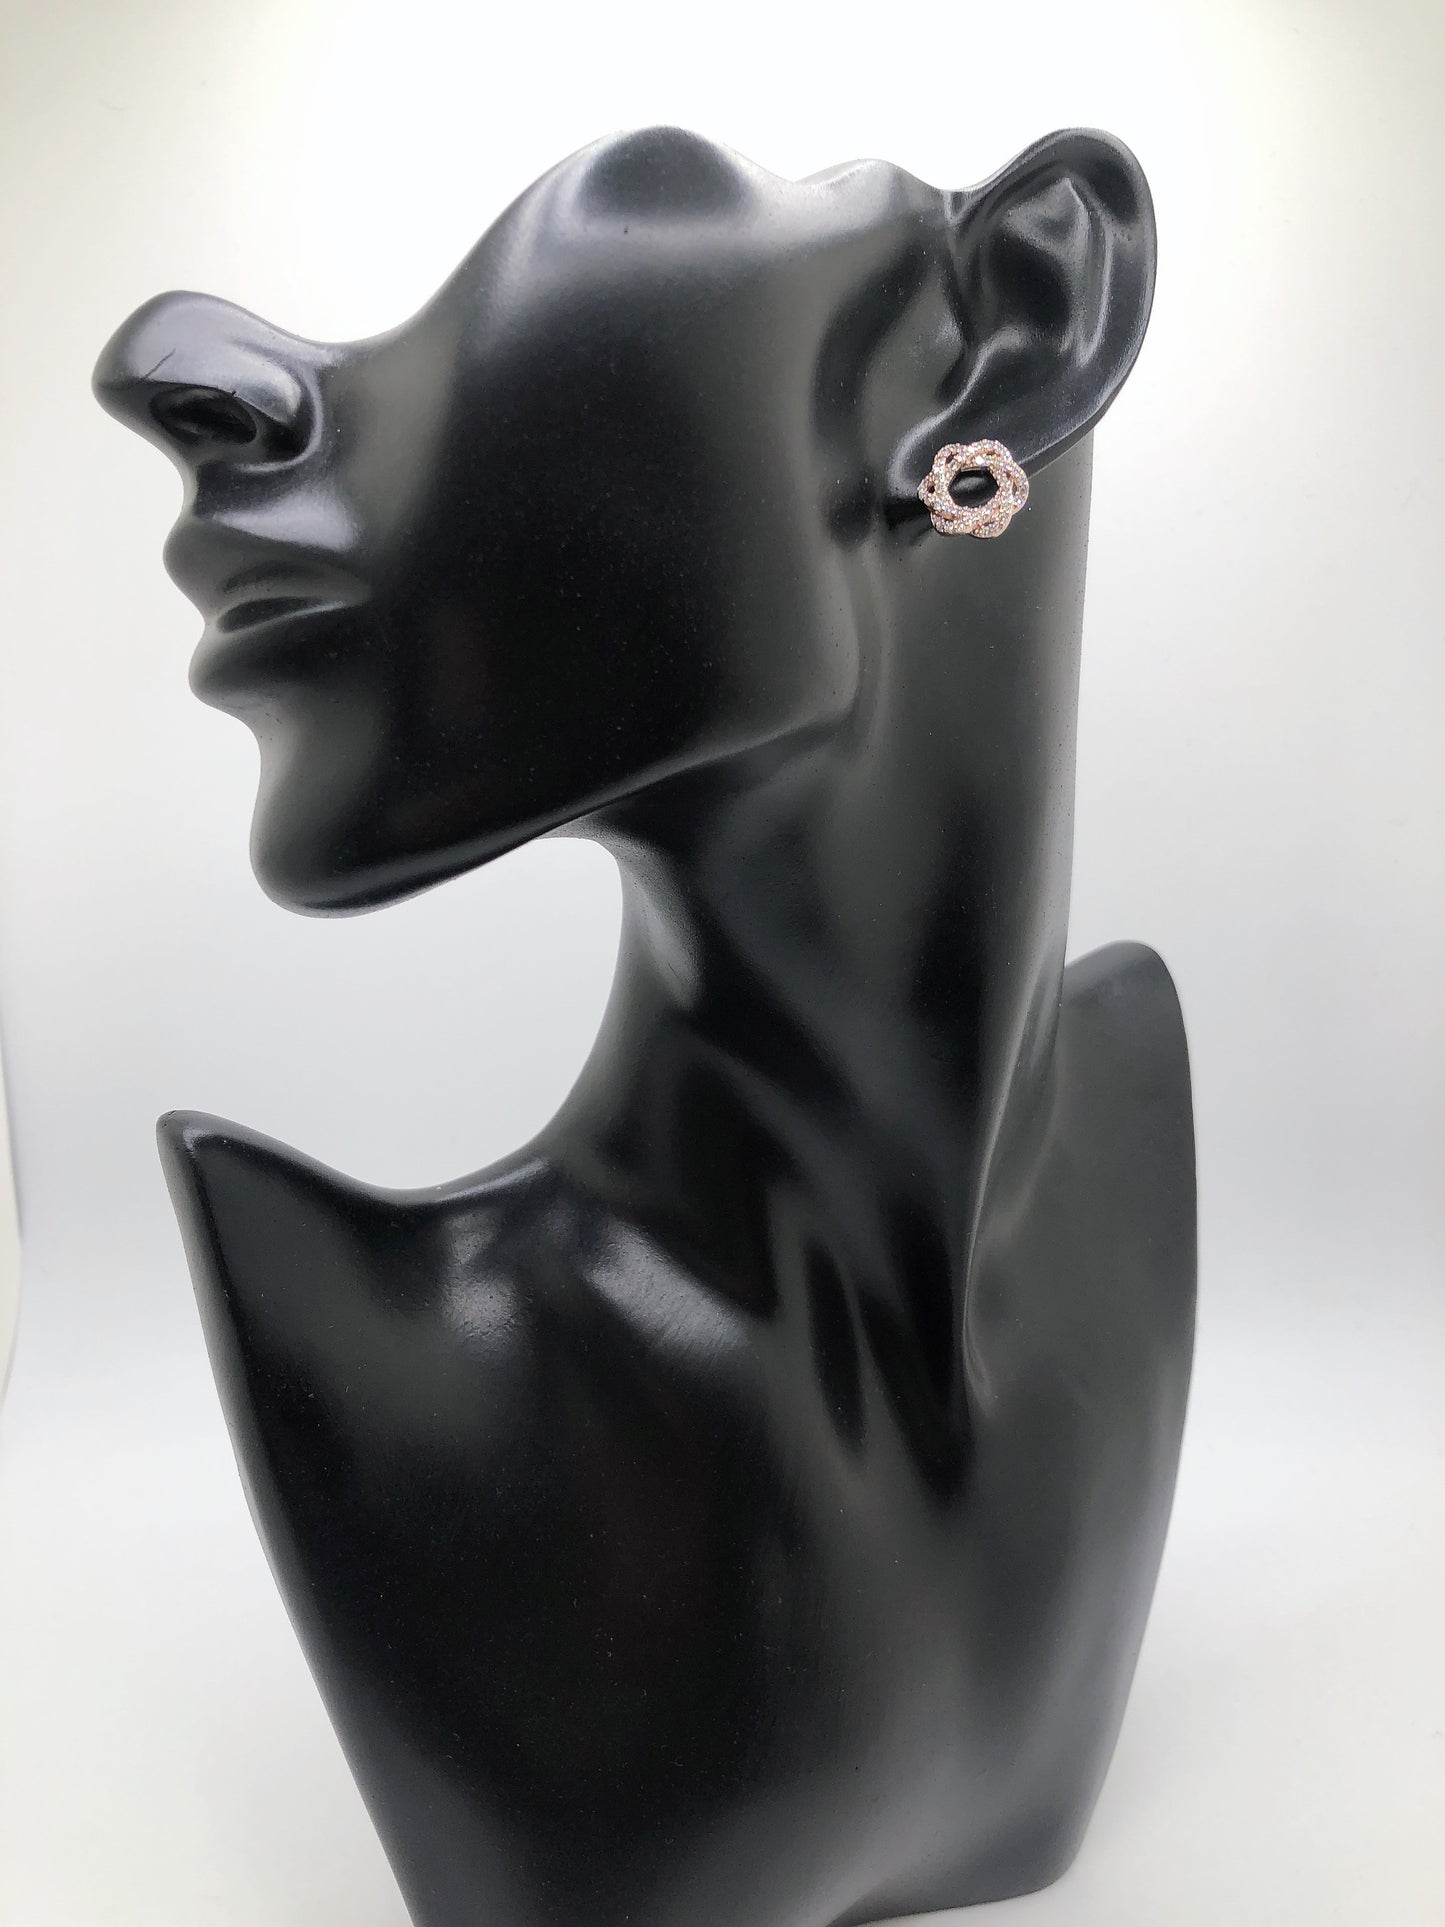 
                  
                    Flower earrings
                  
                